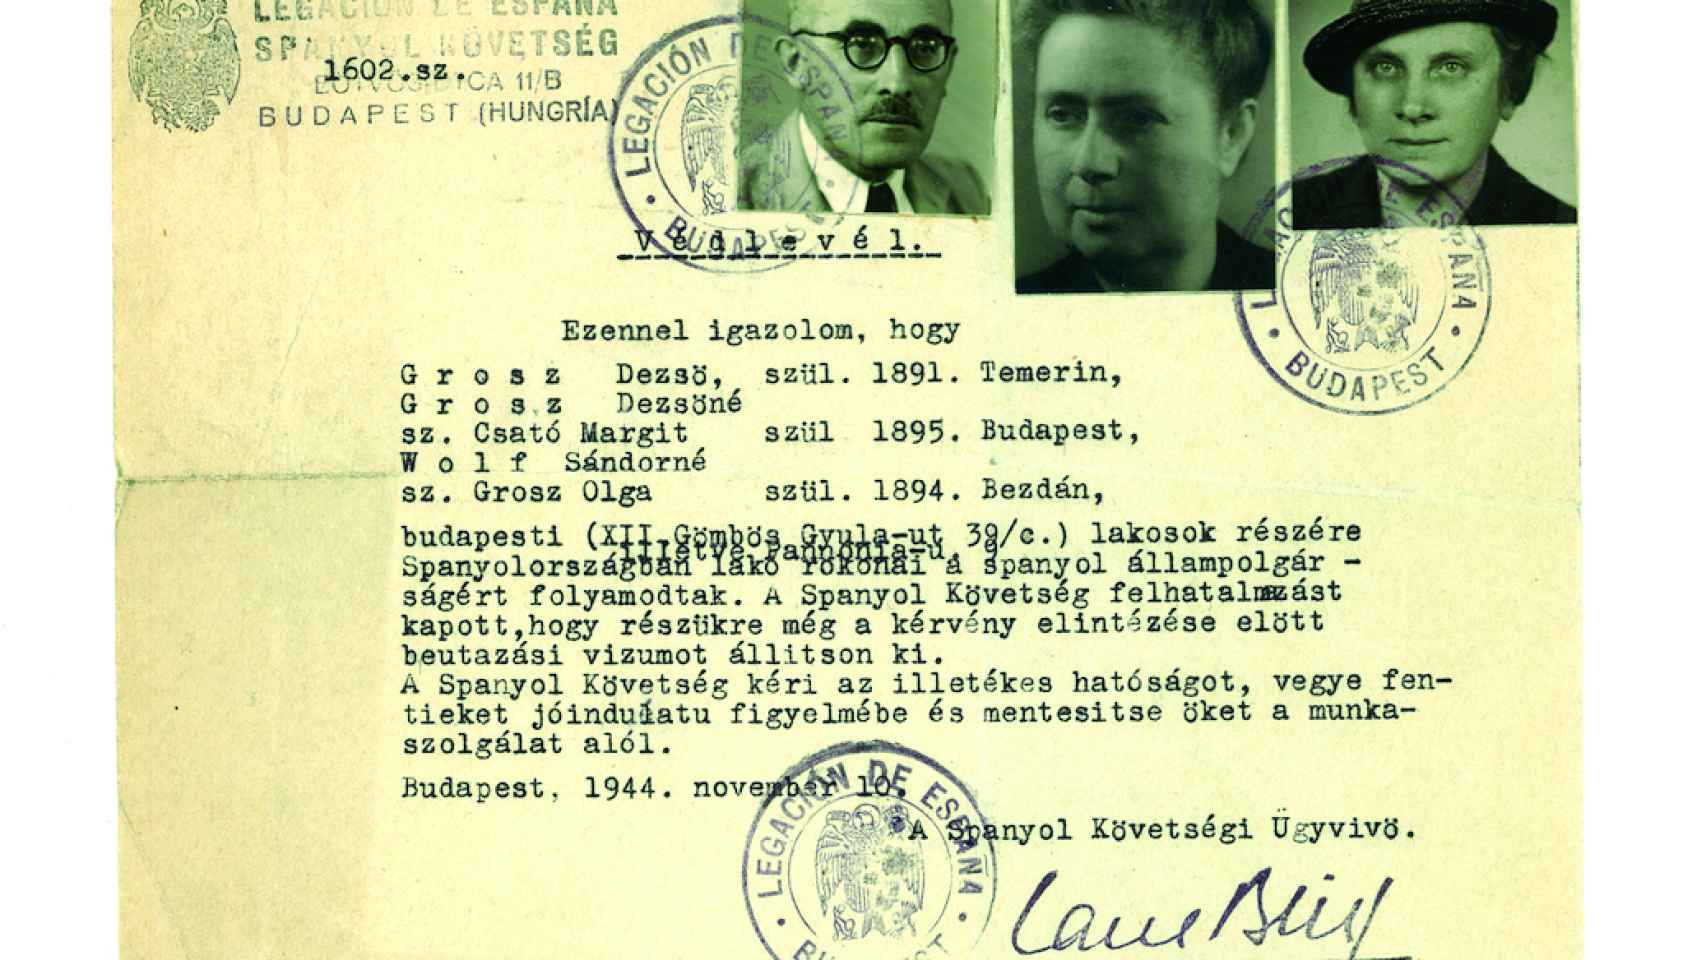 Salvoconducto expedido por la embajada española en Budapest en 1944 para salvar a unos judíos de origen supuestamente español